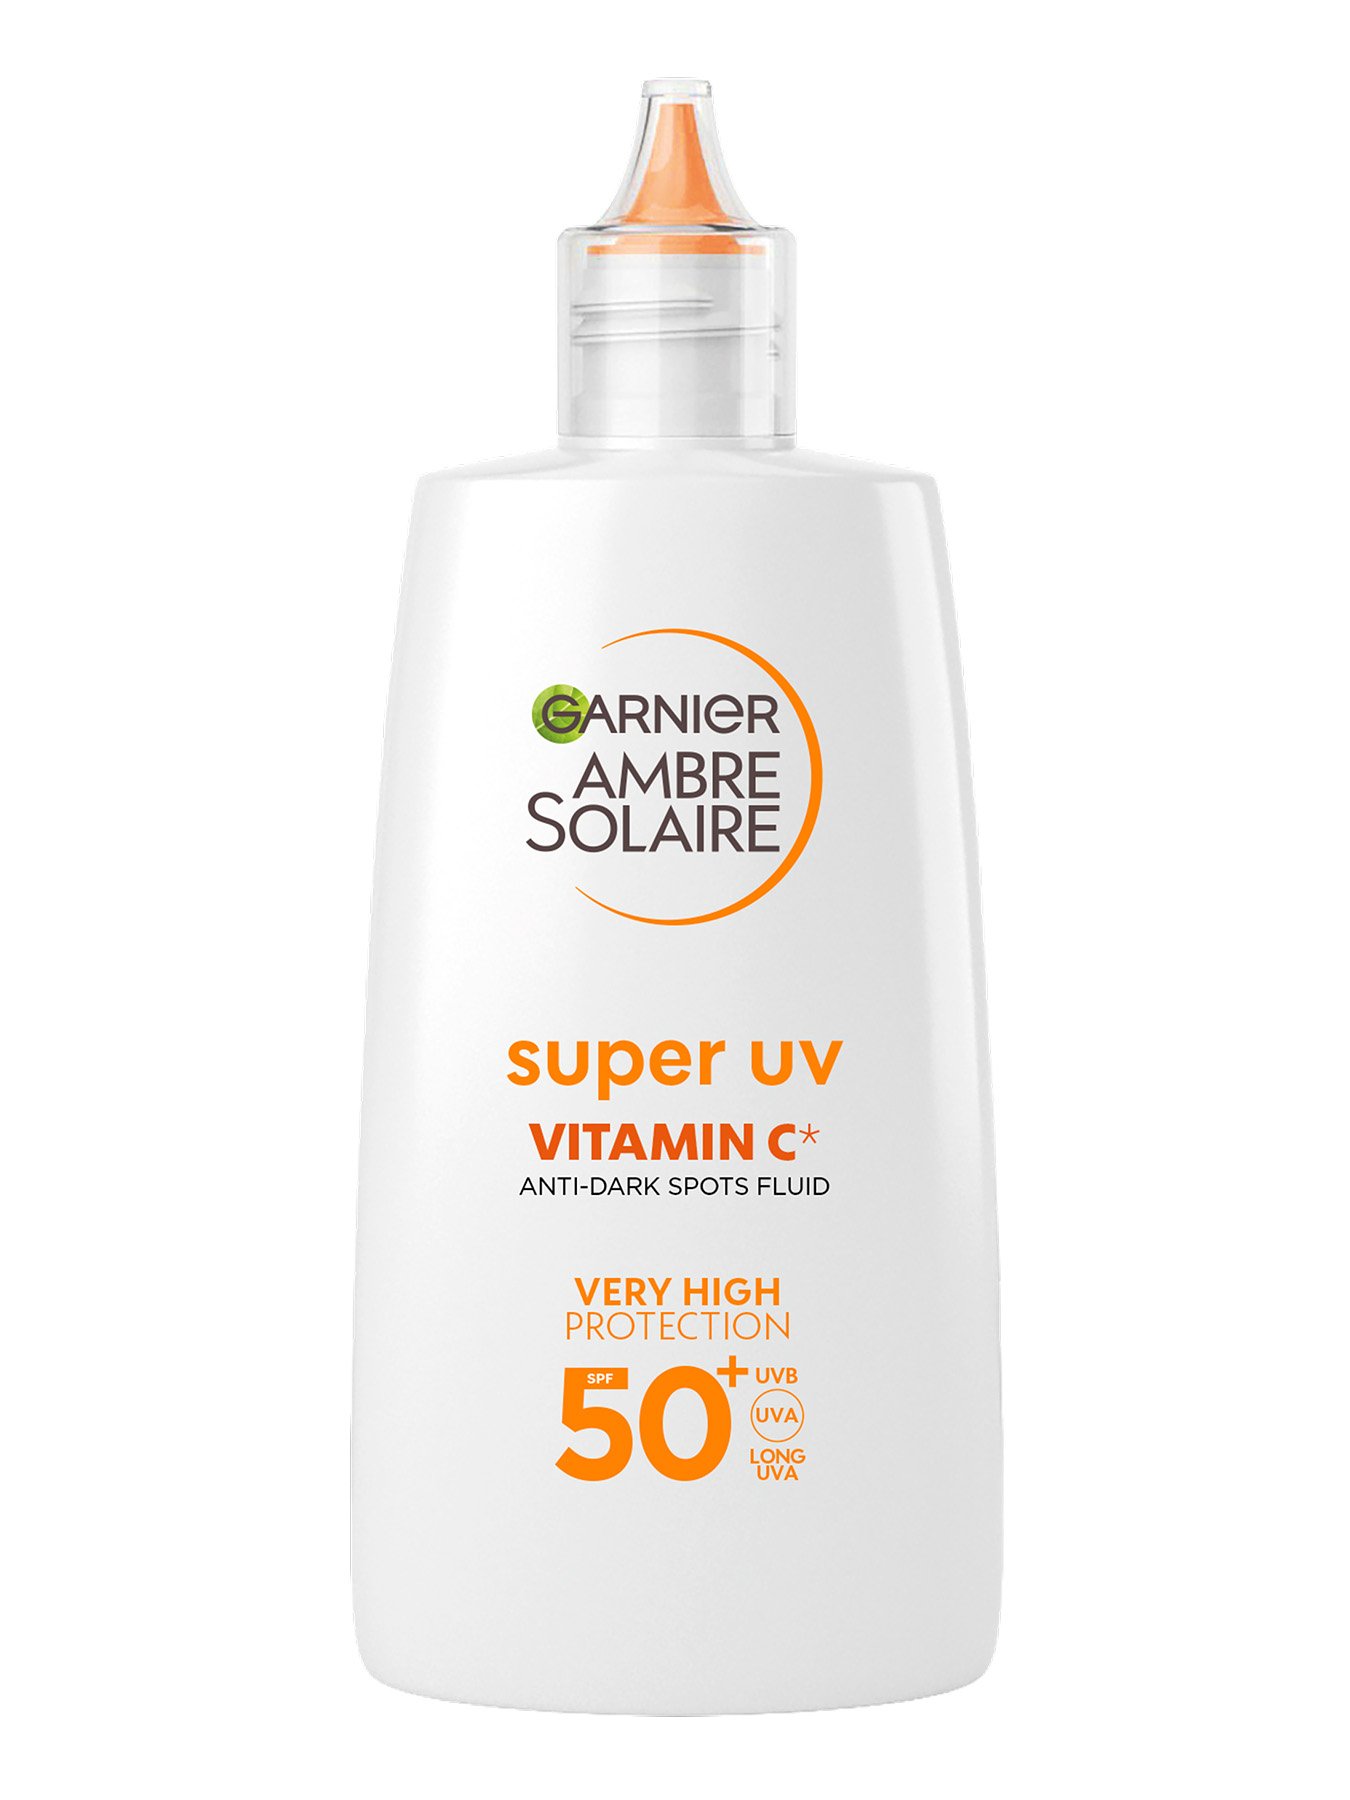 Garnier Ambre Solaire dnevni fluid protiv tamnih mrlja s vitaminom C* i vrlo visokom UV zaštitom SPF 50+